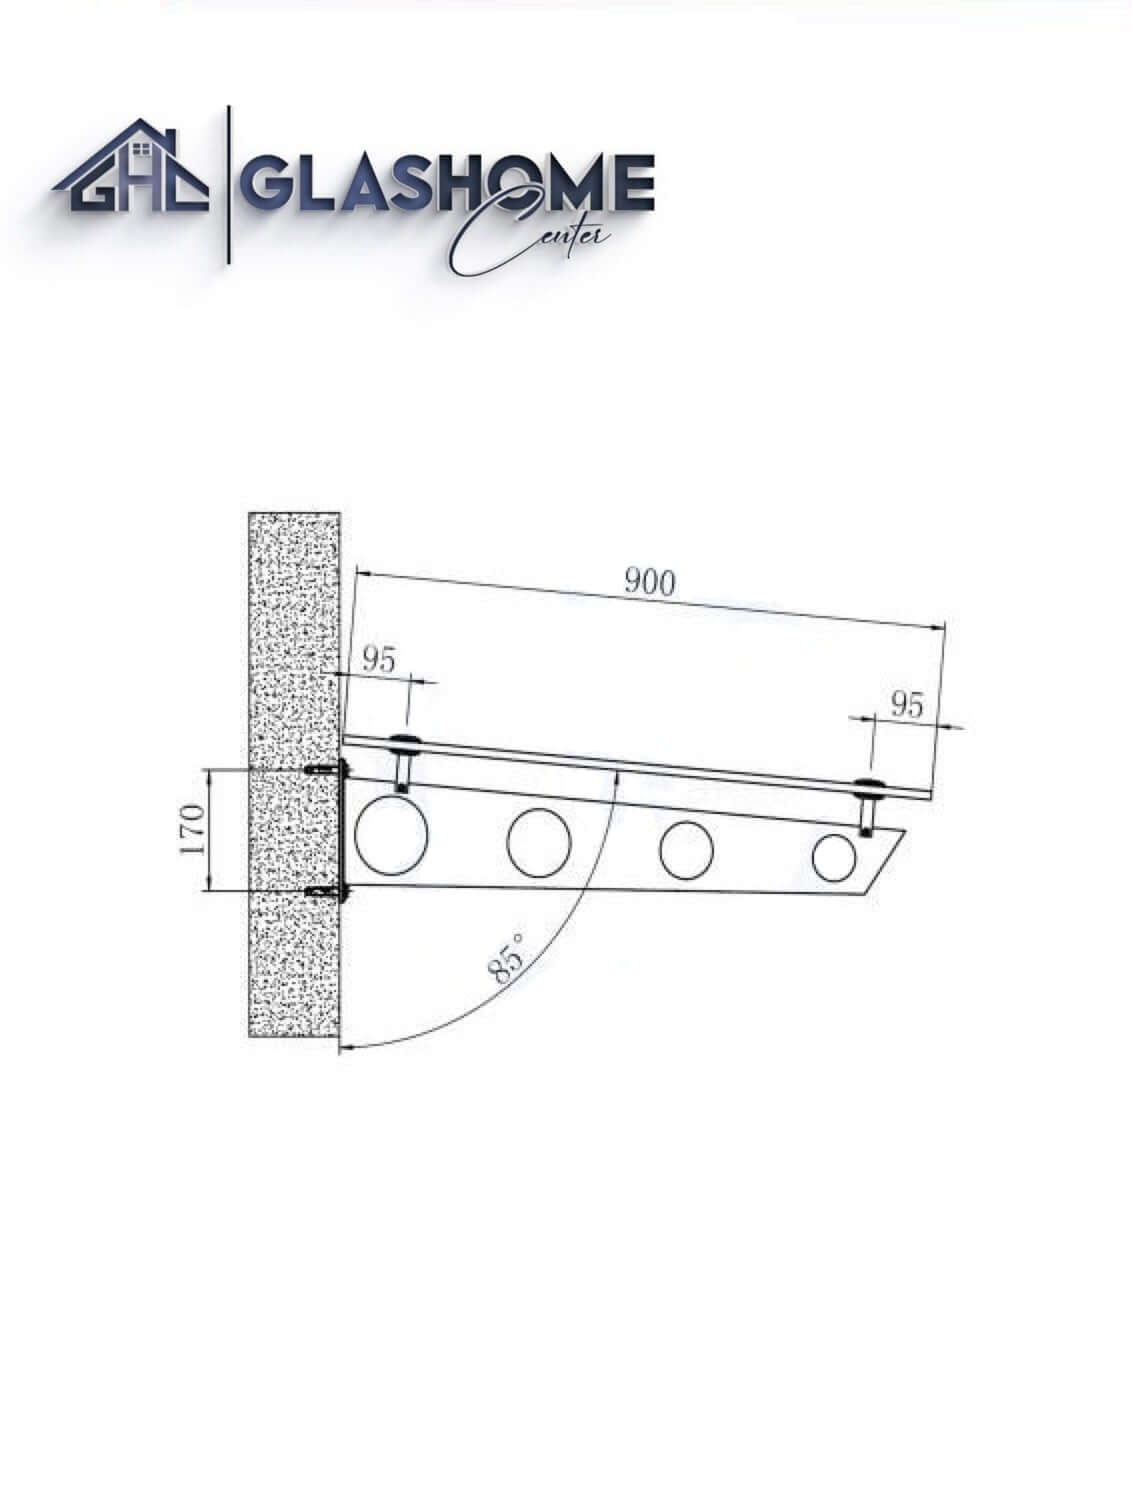 GlasHomeCenter - Glasvordach - Milchglas - 180x90cm - 13,1mm VSG - incl. 2 varianti Edelstahlhalterungen nere "Stoccolma"